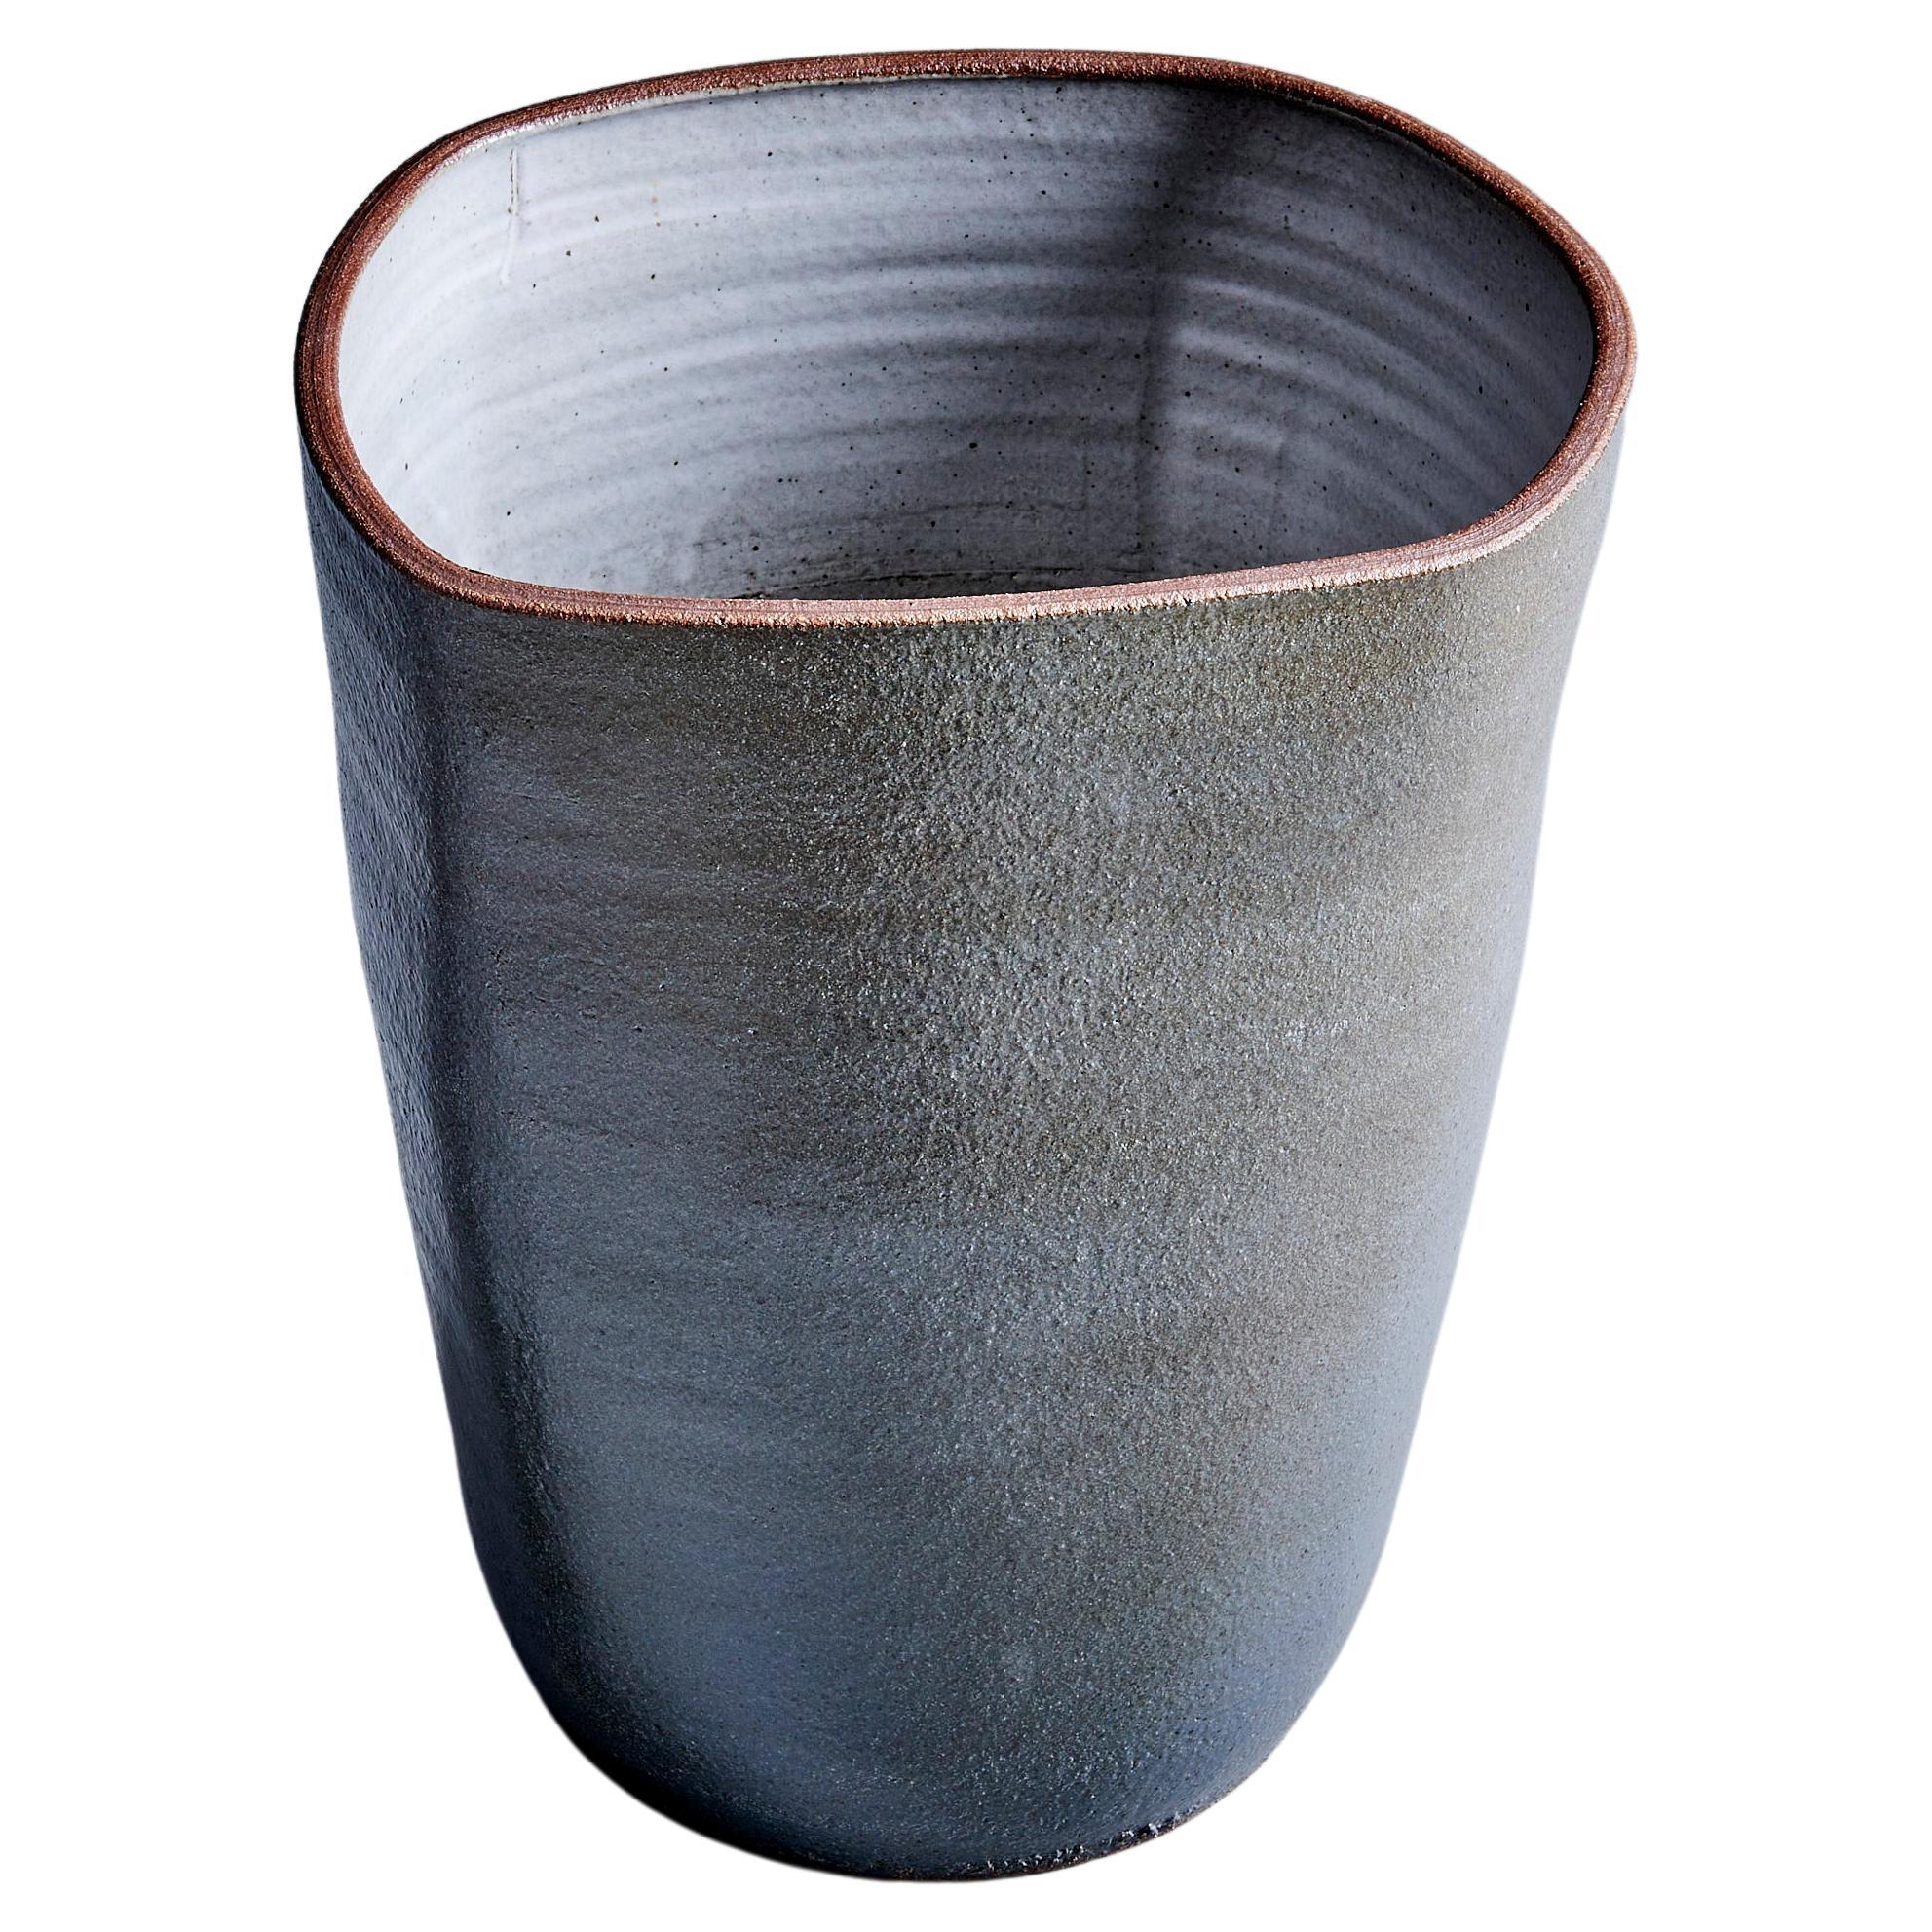 Brent Bennett Ceramic Planter in Grey, USA - 2022 For Sale